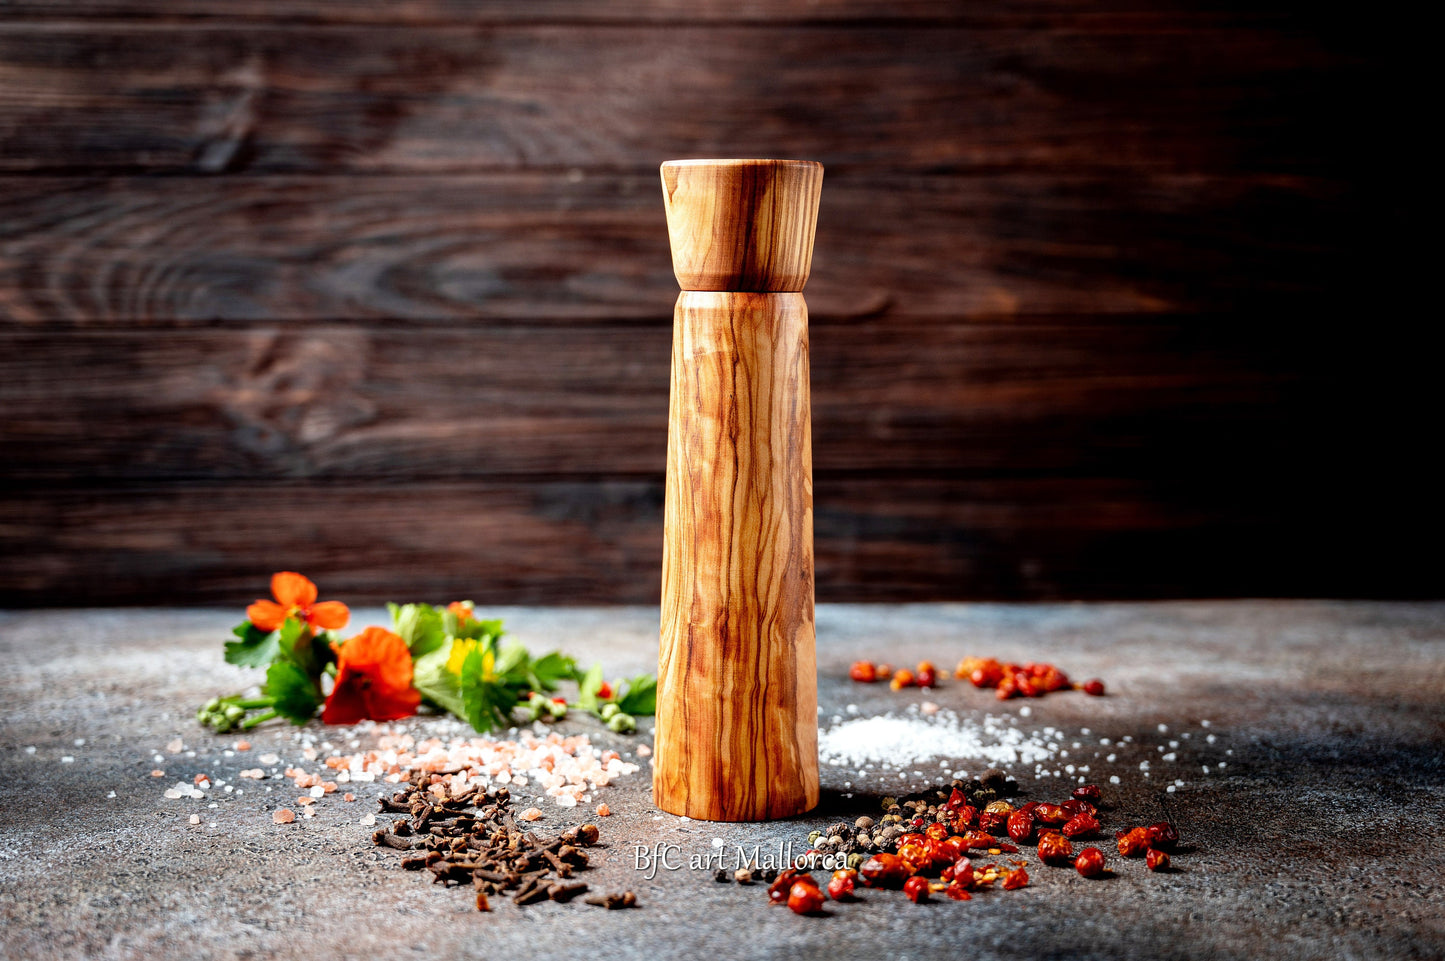 Pepper mills With Adjustable Ceramic Mechanism plus base plate for the Pepper grinder, Table Pepper Grinder Handmade and salt shaker